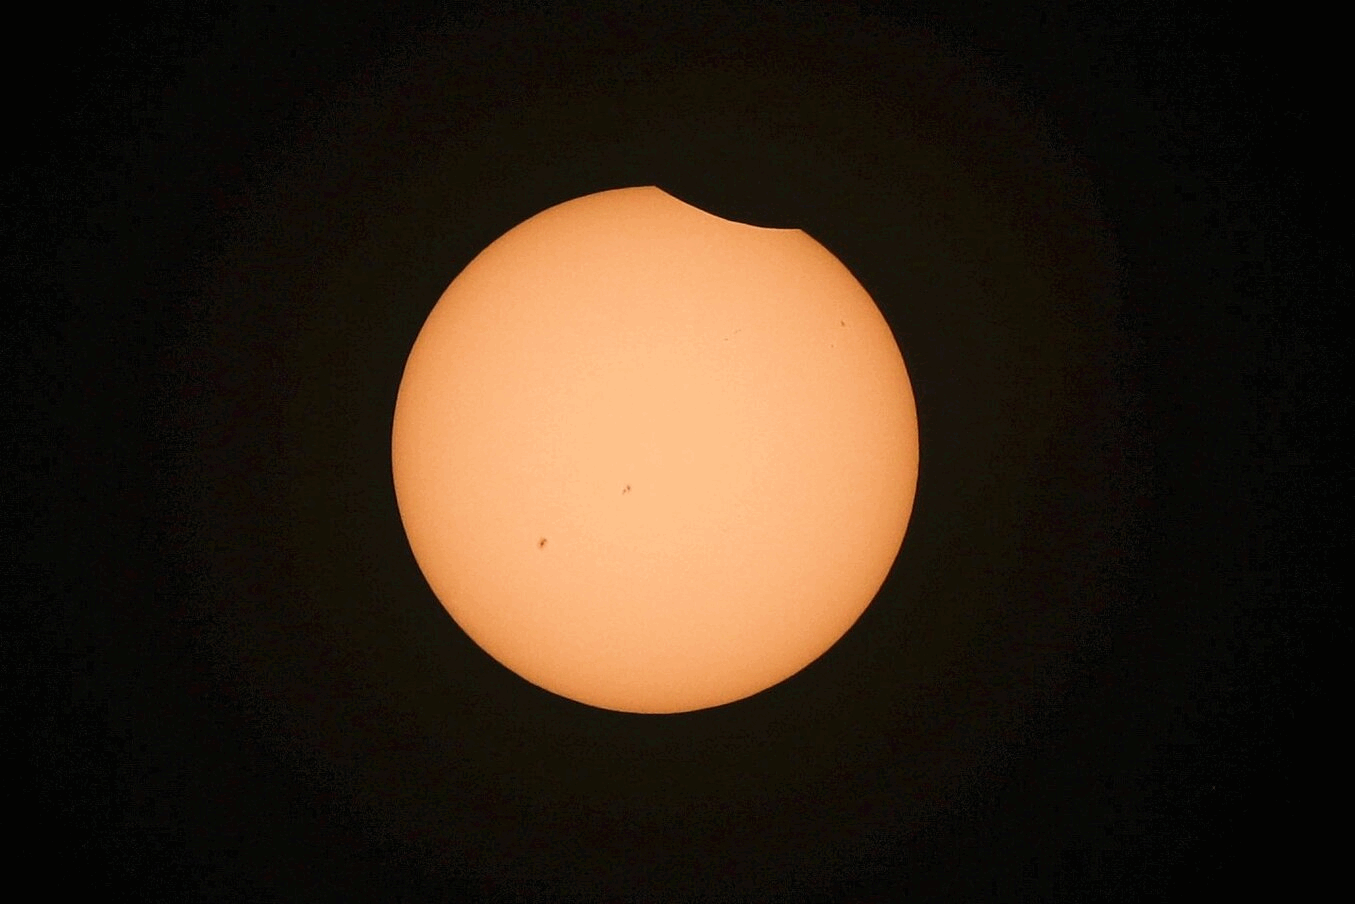 Met miljoenen naar de zonsverduistering kijken: eclipsmania is een feit 